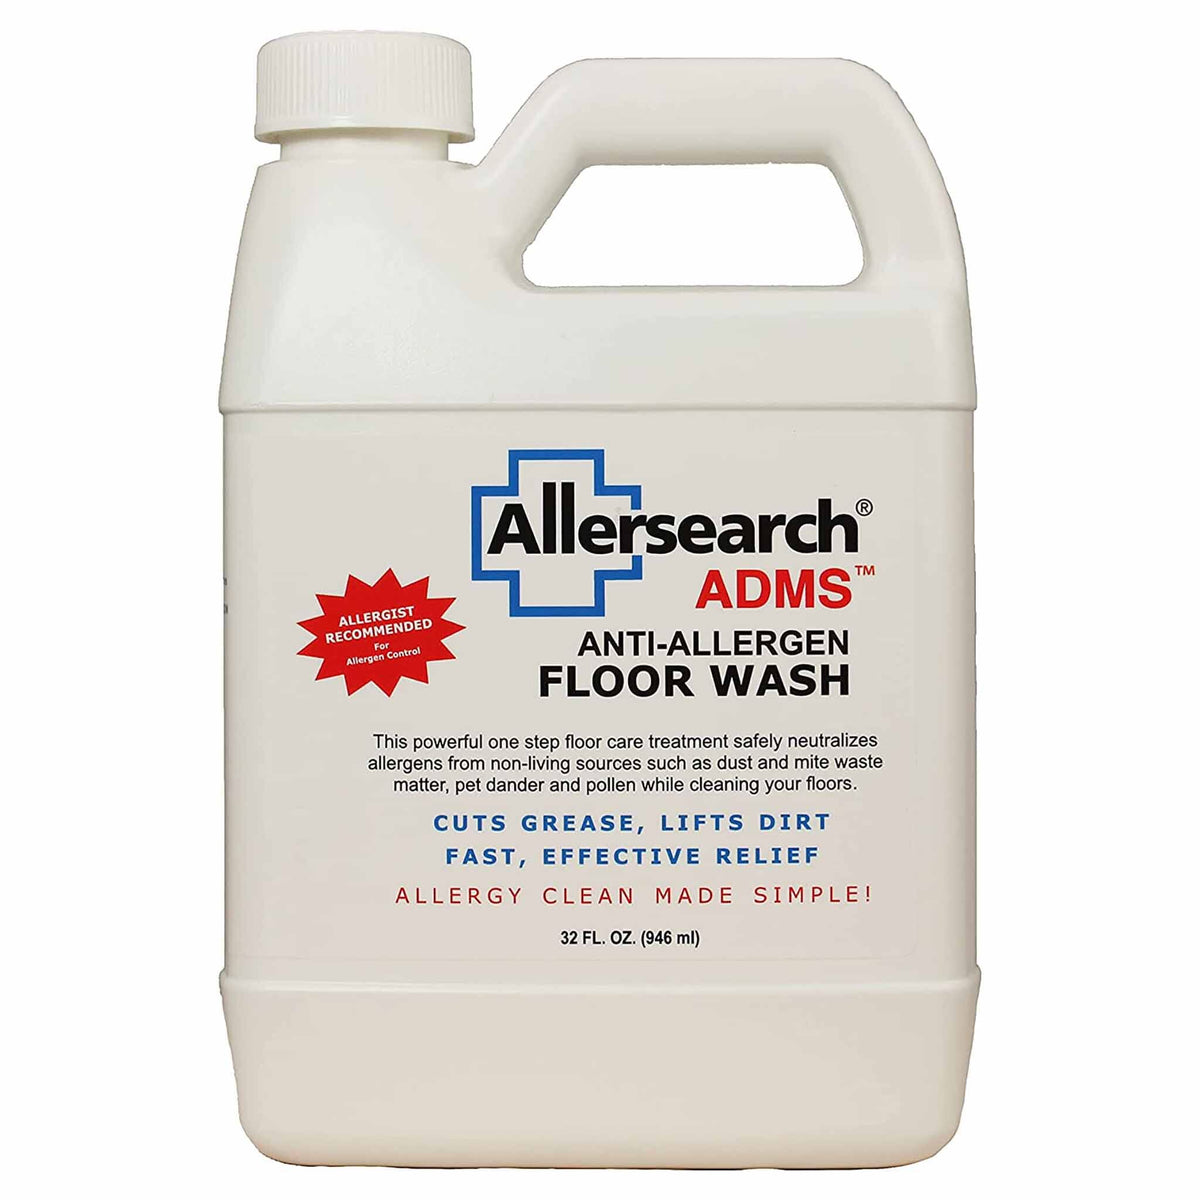 Allersearch ADMS™ Anti-Allergen Floor Wash